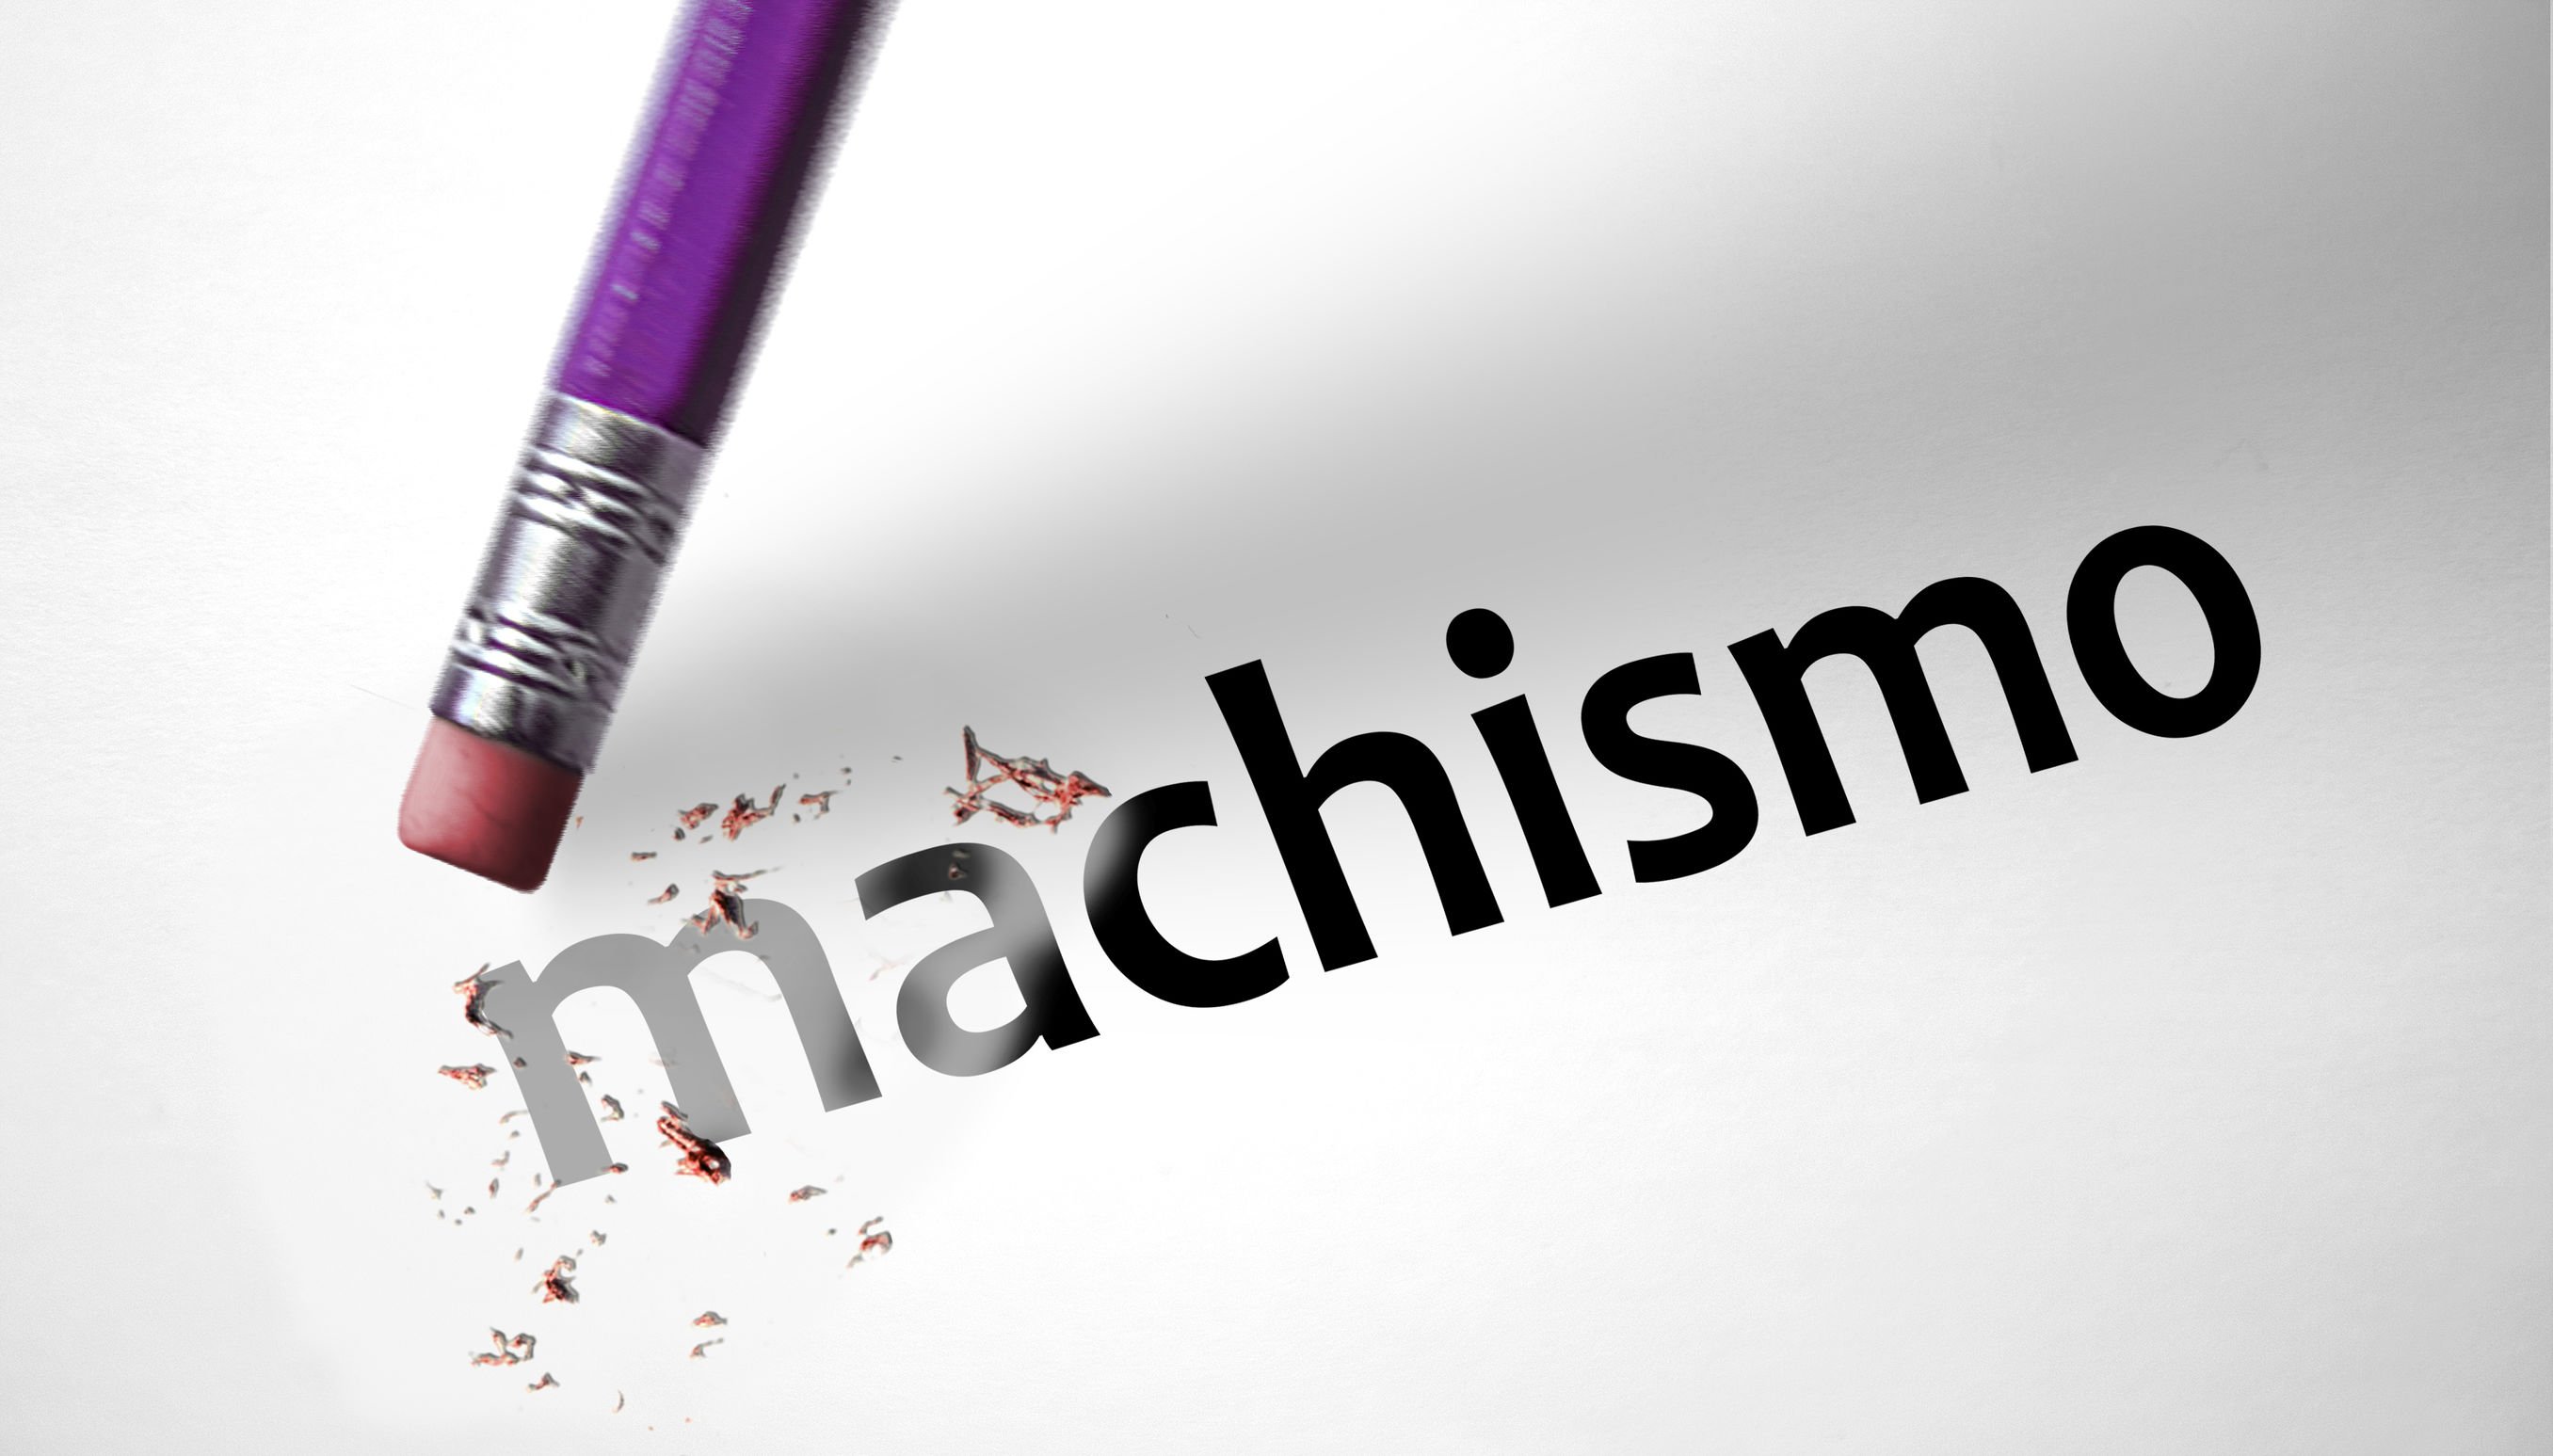 Palavra 'machismo' escrita em um papel, e um lápis de ponta cabeça, com sua borracha quase encostando no papel.